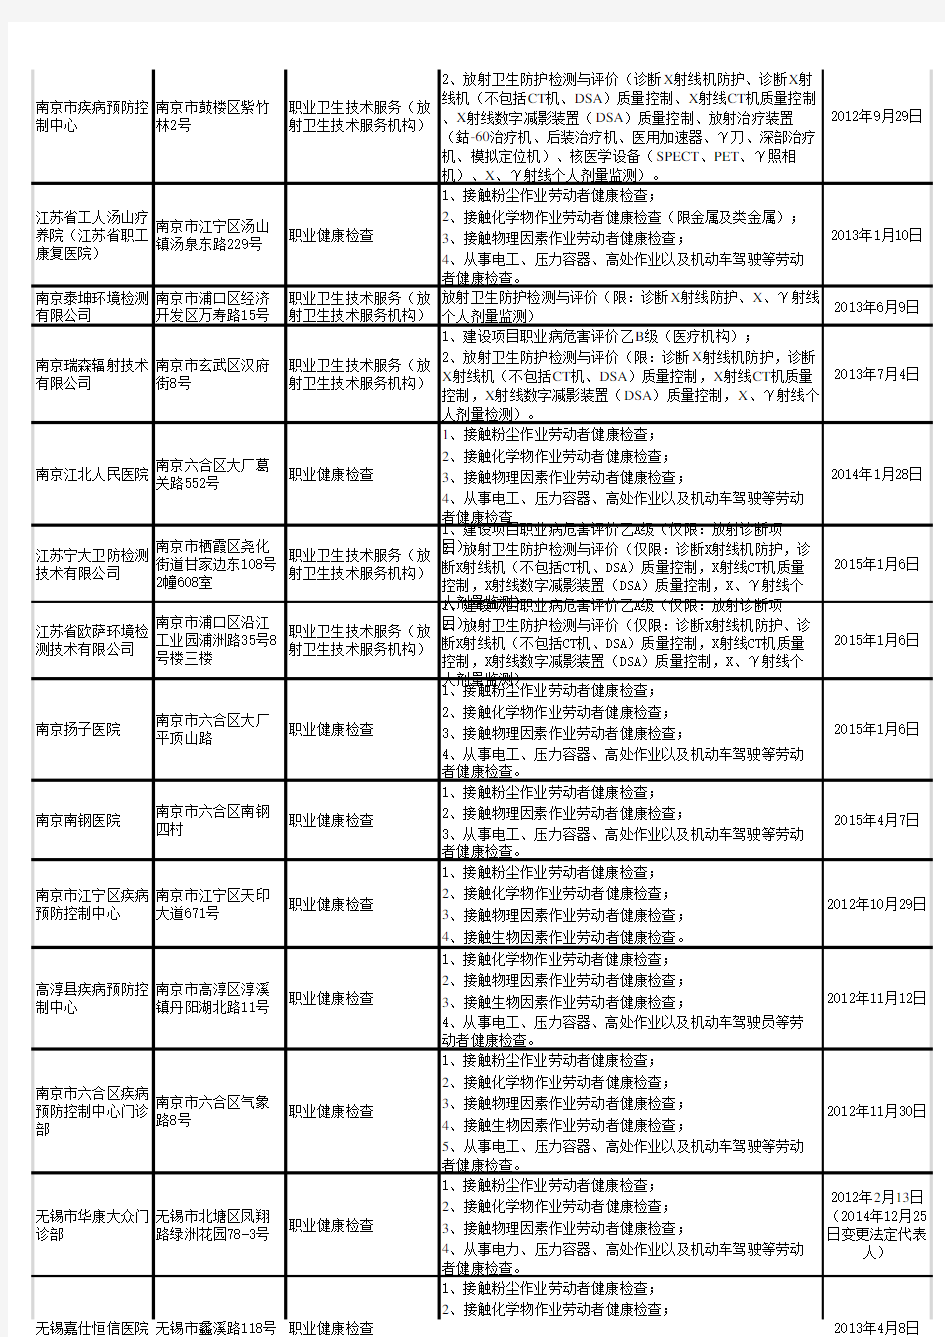 江苏省职业健康体检机构名单